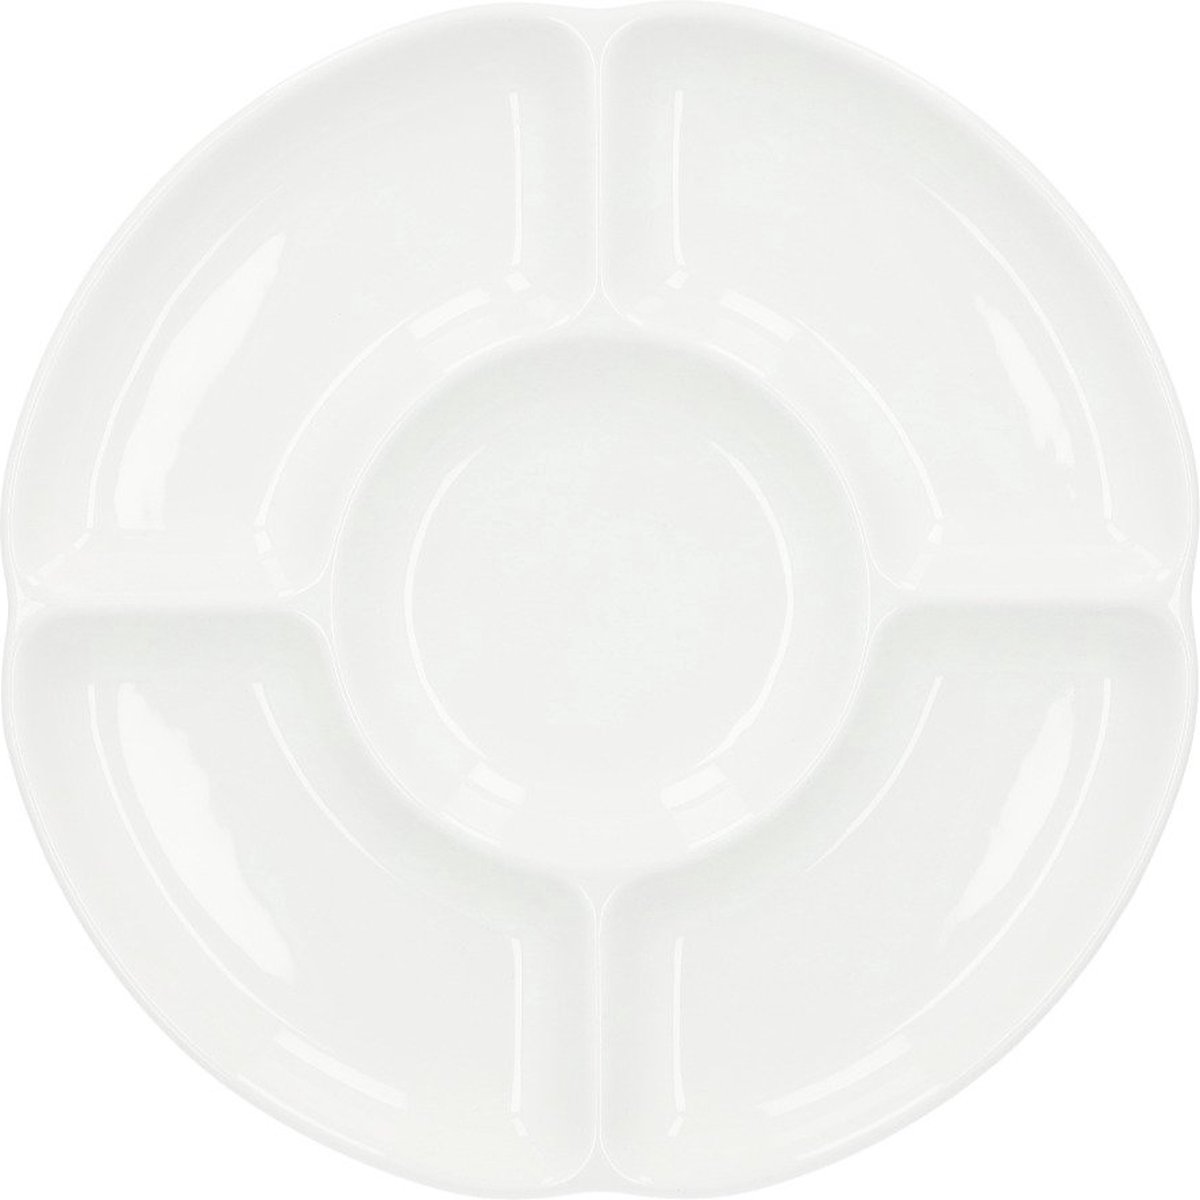 HOMLA Auro bord modern en stijlvol bord voor vele interieurs keukenapparatuur servies minimalistisch design en klassieke vorm gemaakt van wit porselein diameter 25 cm